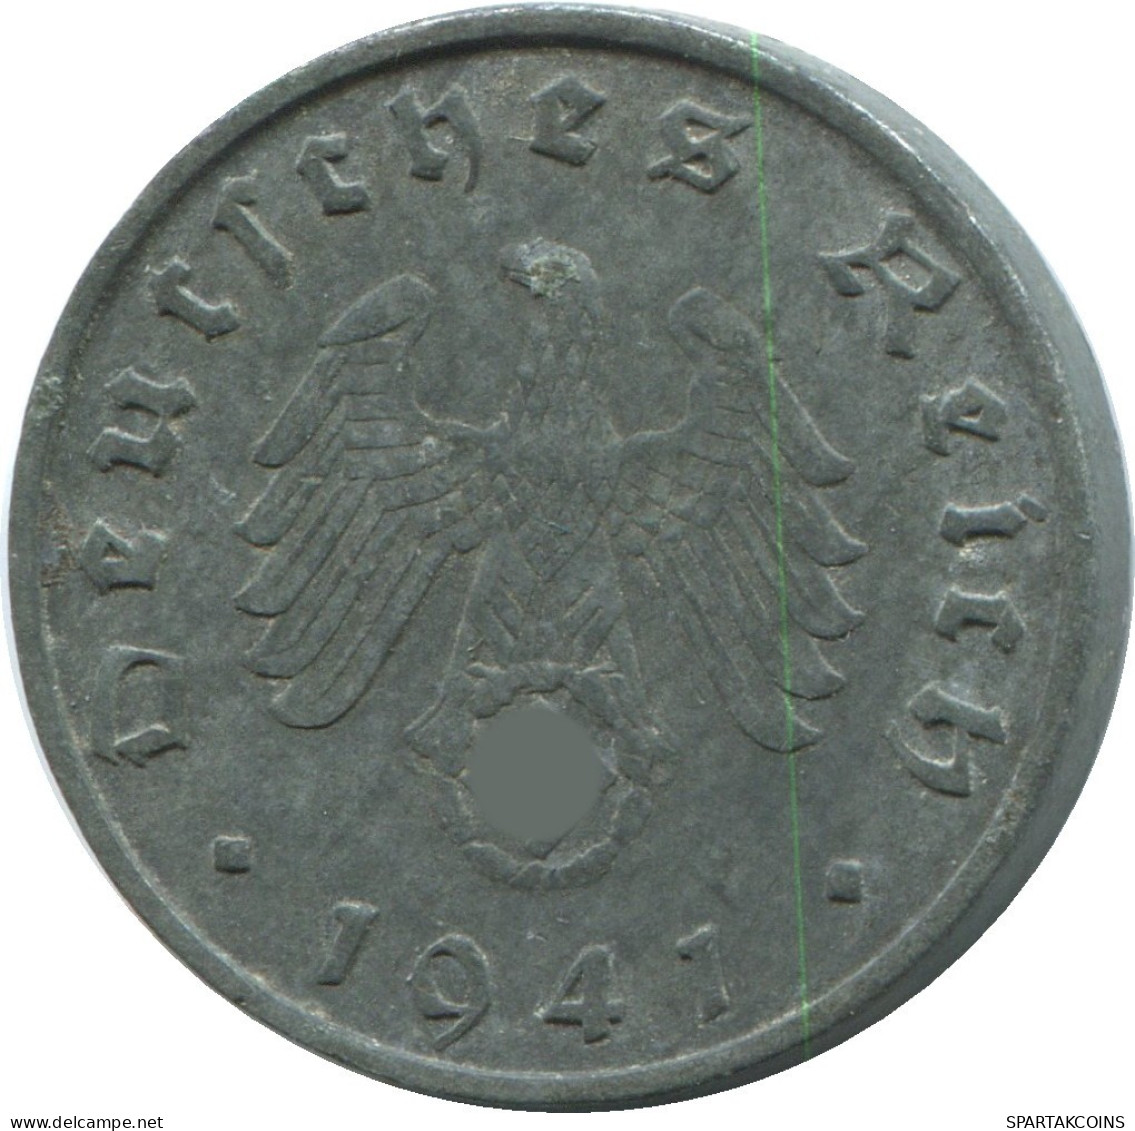 10 REICHSPFENNIG 1941 B DEUTSCHLAND Münze GERMANY #DE10442.5.D.A - 10 Reichspfennig